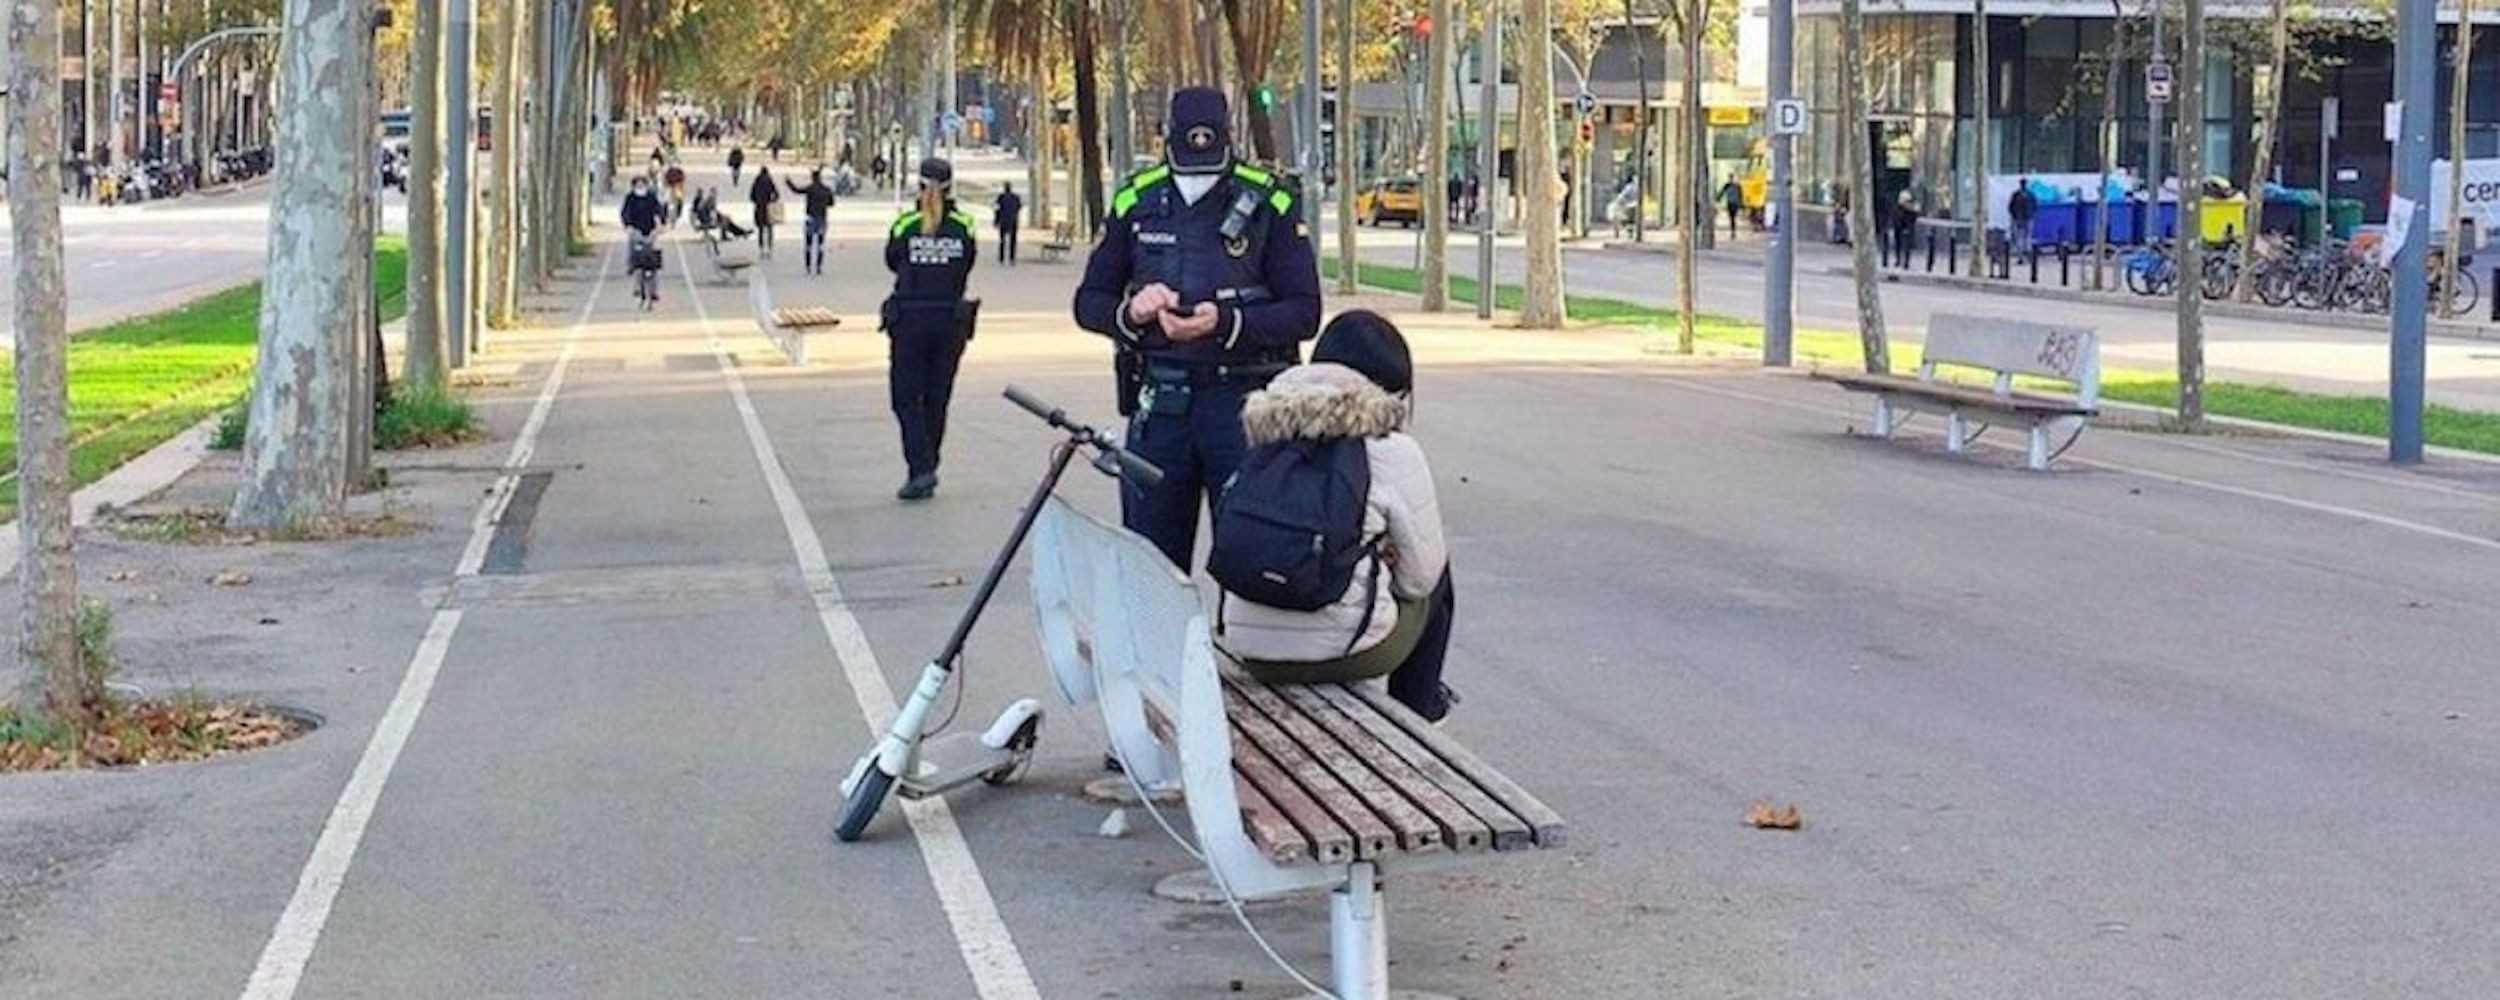 La Guardia Urbana multa a una usuaria de patinete eléctrico en Barcelona / EUROPA PRESS